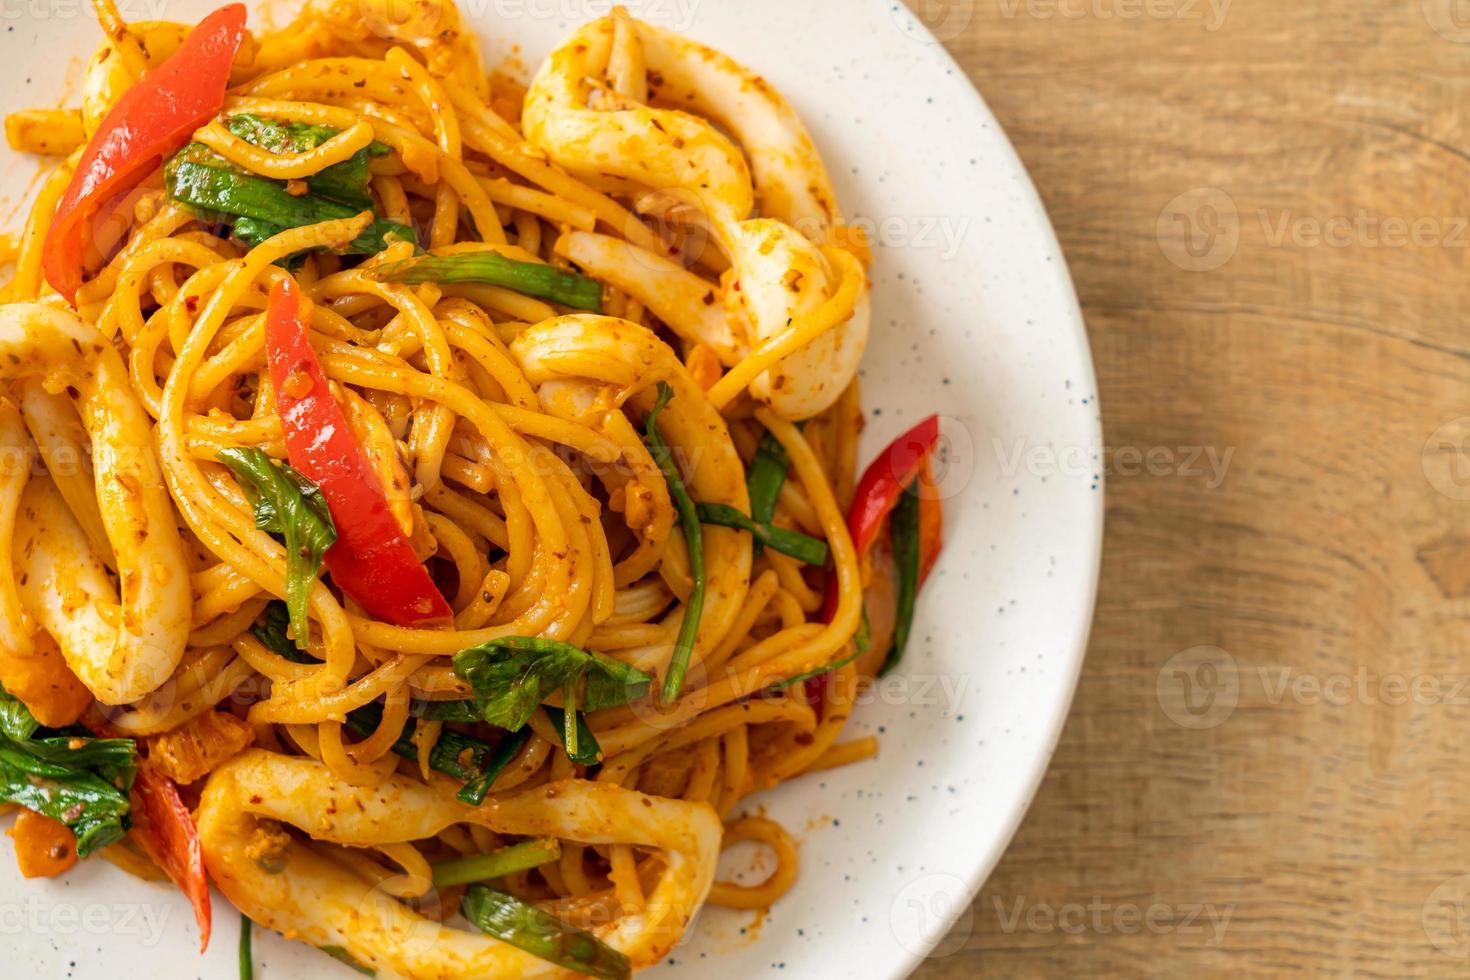 roergebakken spaghetti met gezouten ei en inktvis - fusion food style foto